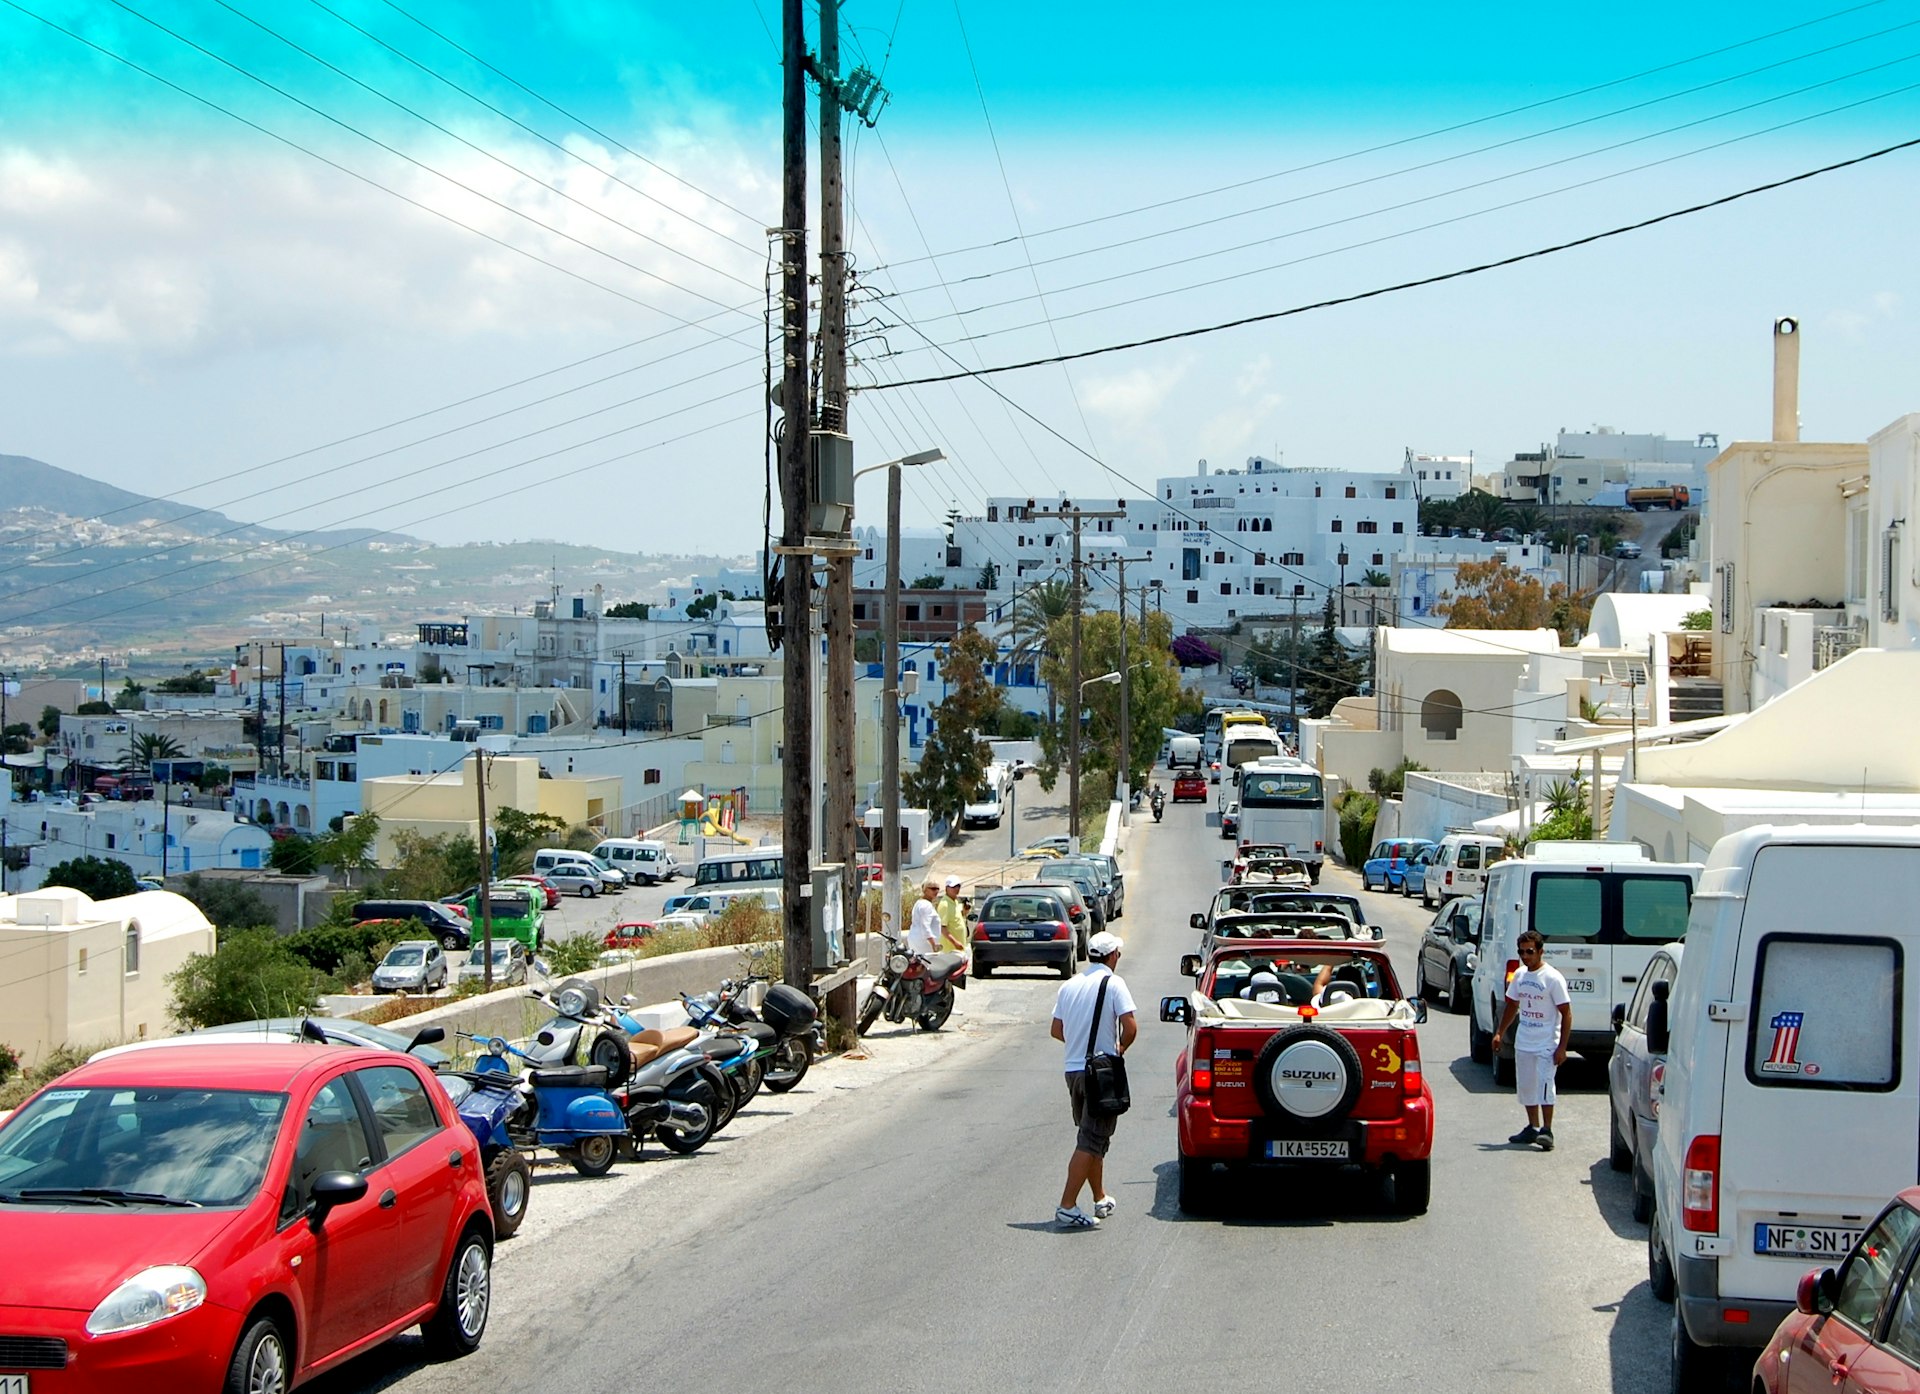 A queue of cars along a narrow street in Santorini